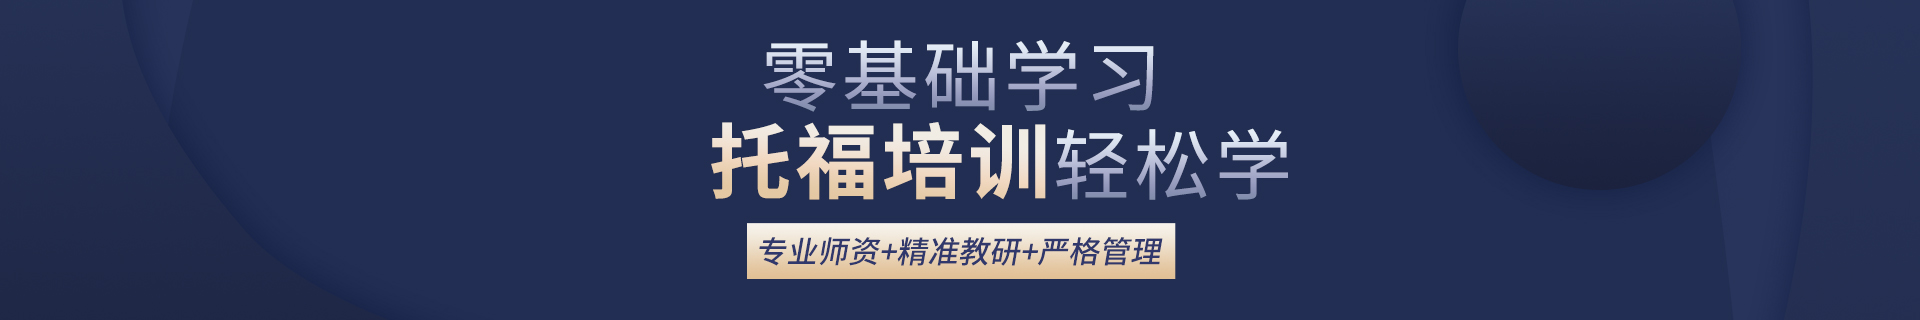 苏州平江环球教育培训机构